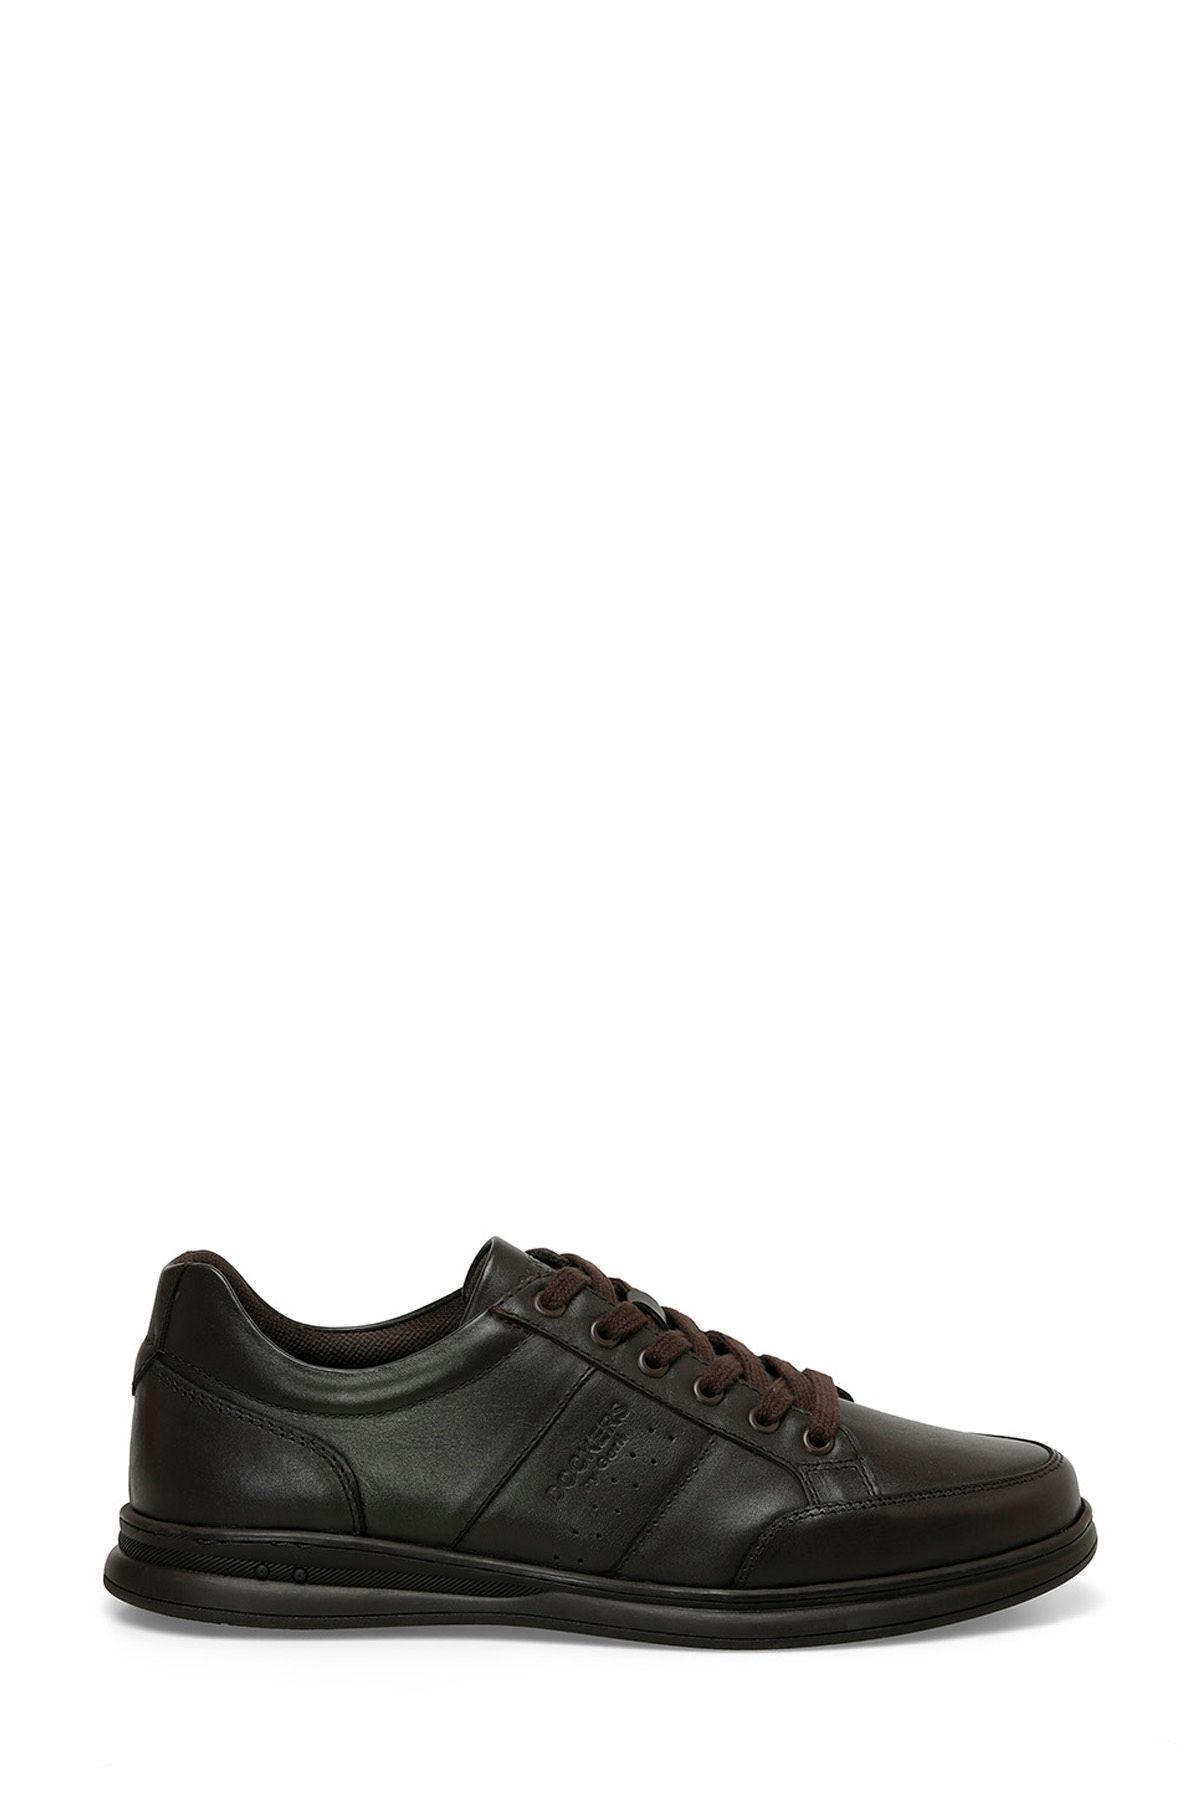 Dockers 236006 4FX Kahverengi Erkek Ayakkabı